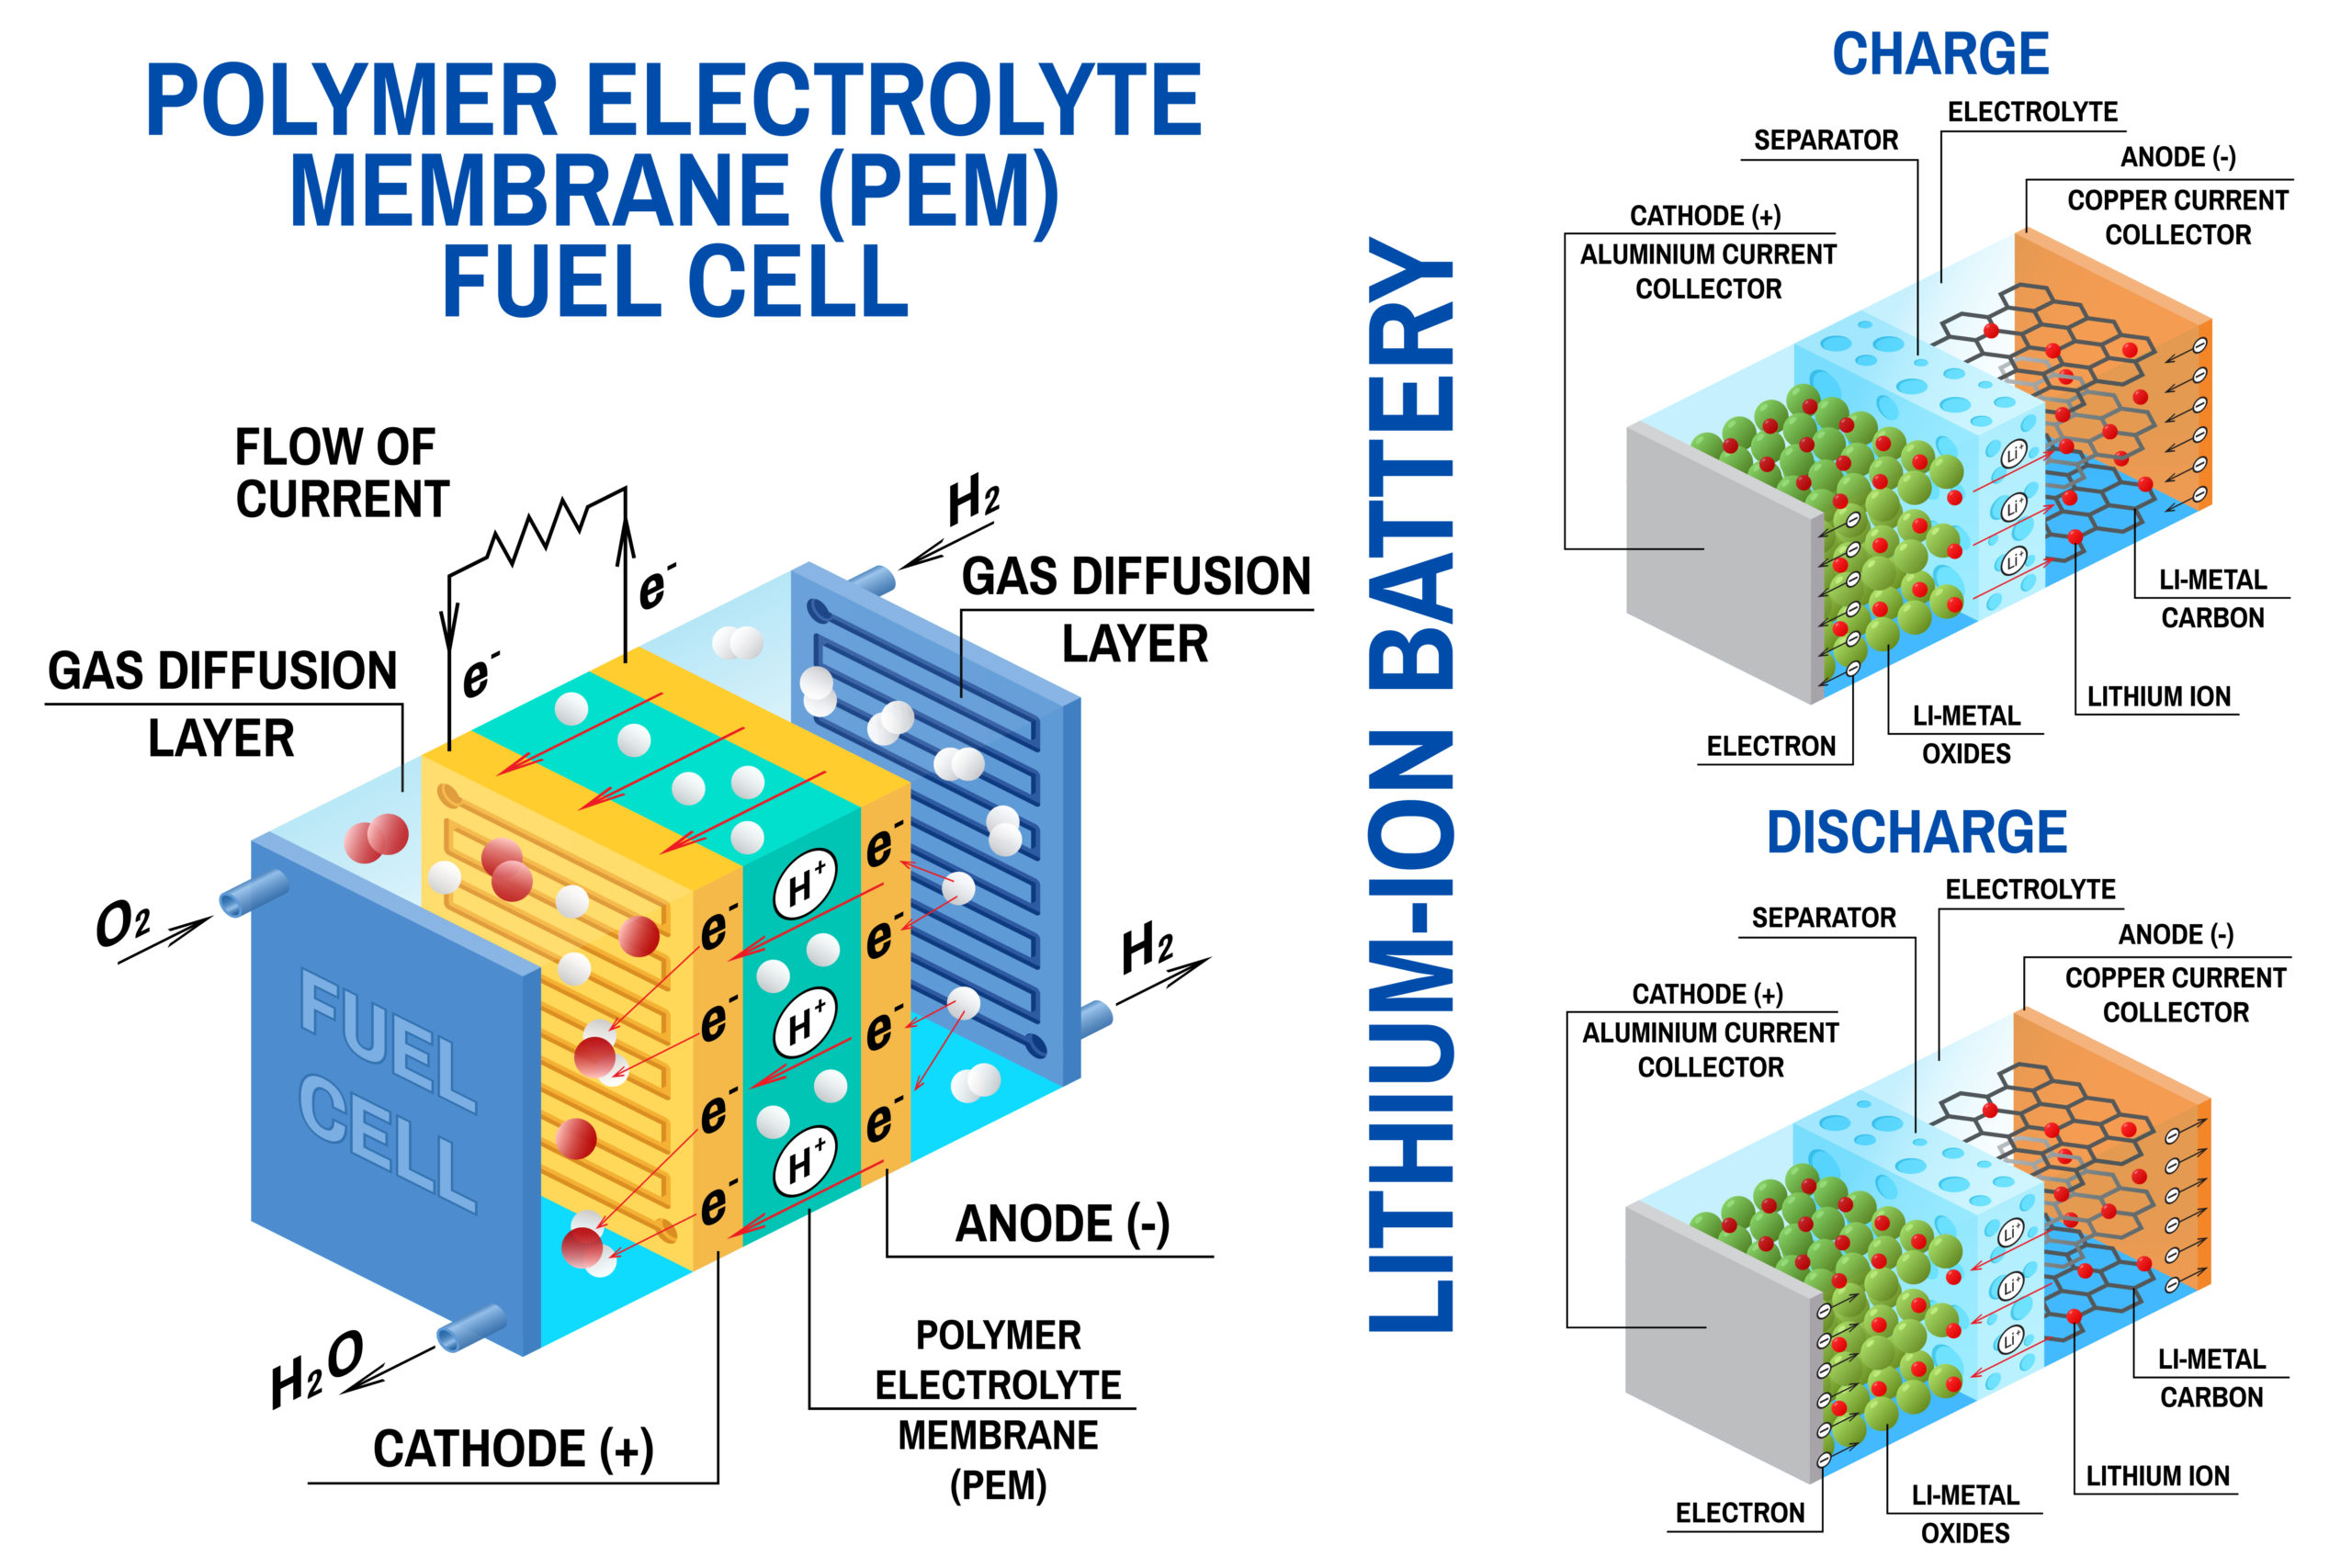 aan de andere kant, Te Groenland Cathode Studies: New Opportunities in Li-Ion Batteries